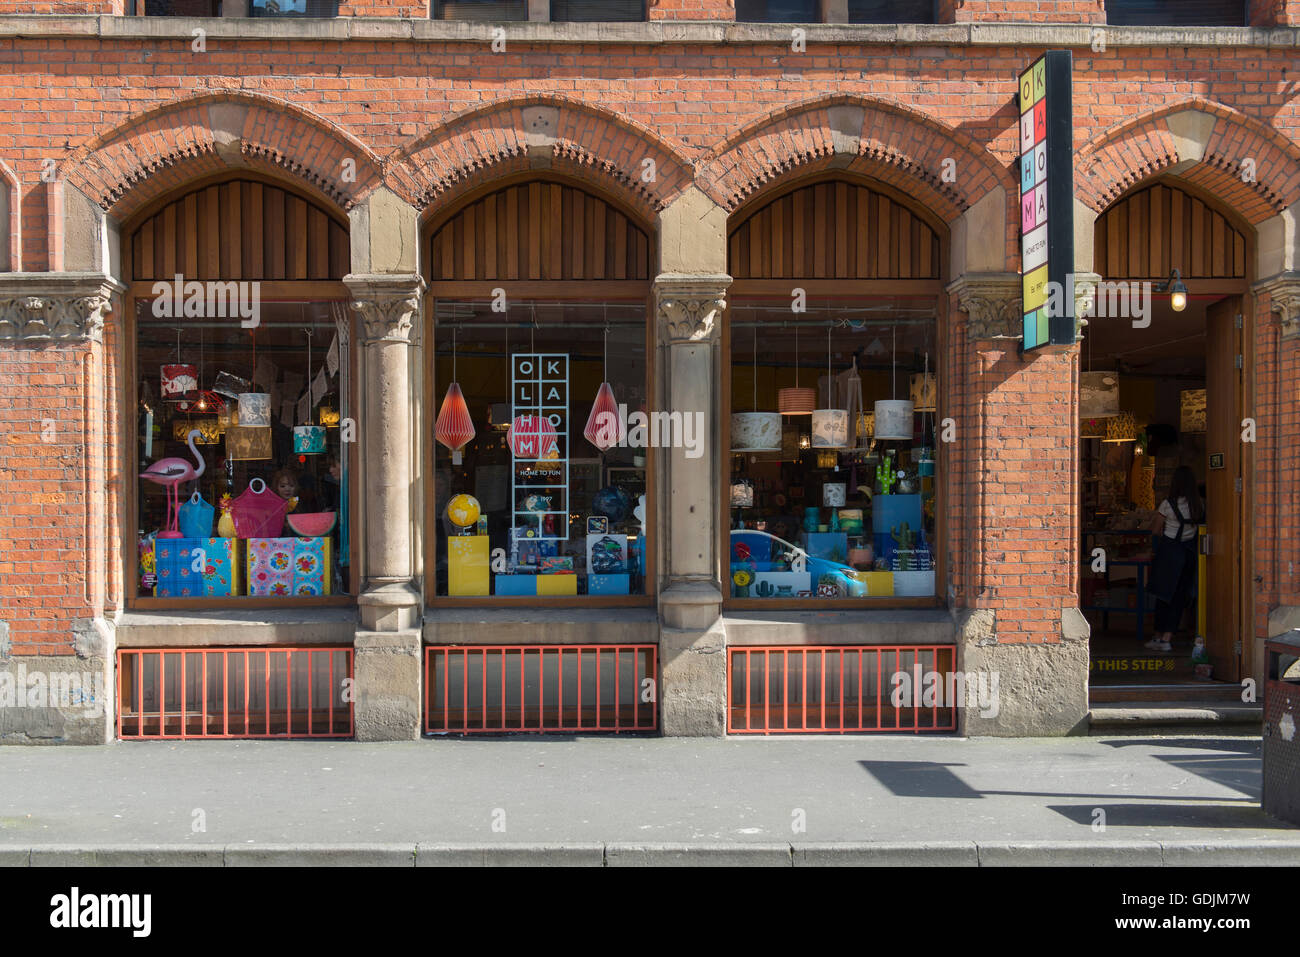 Oklahoma negozio di articoli da regalo si trova su High Street nel quartiere settentrionale area di Manchester. Foto Stock